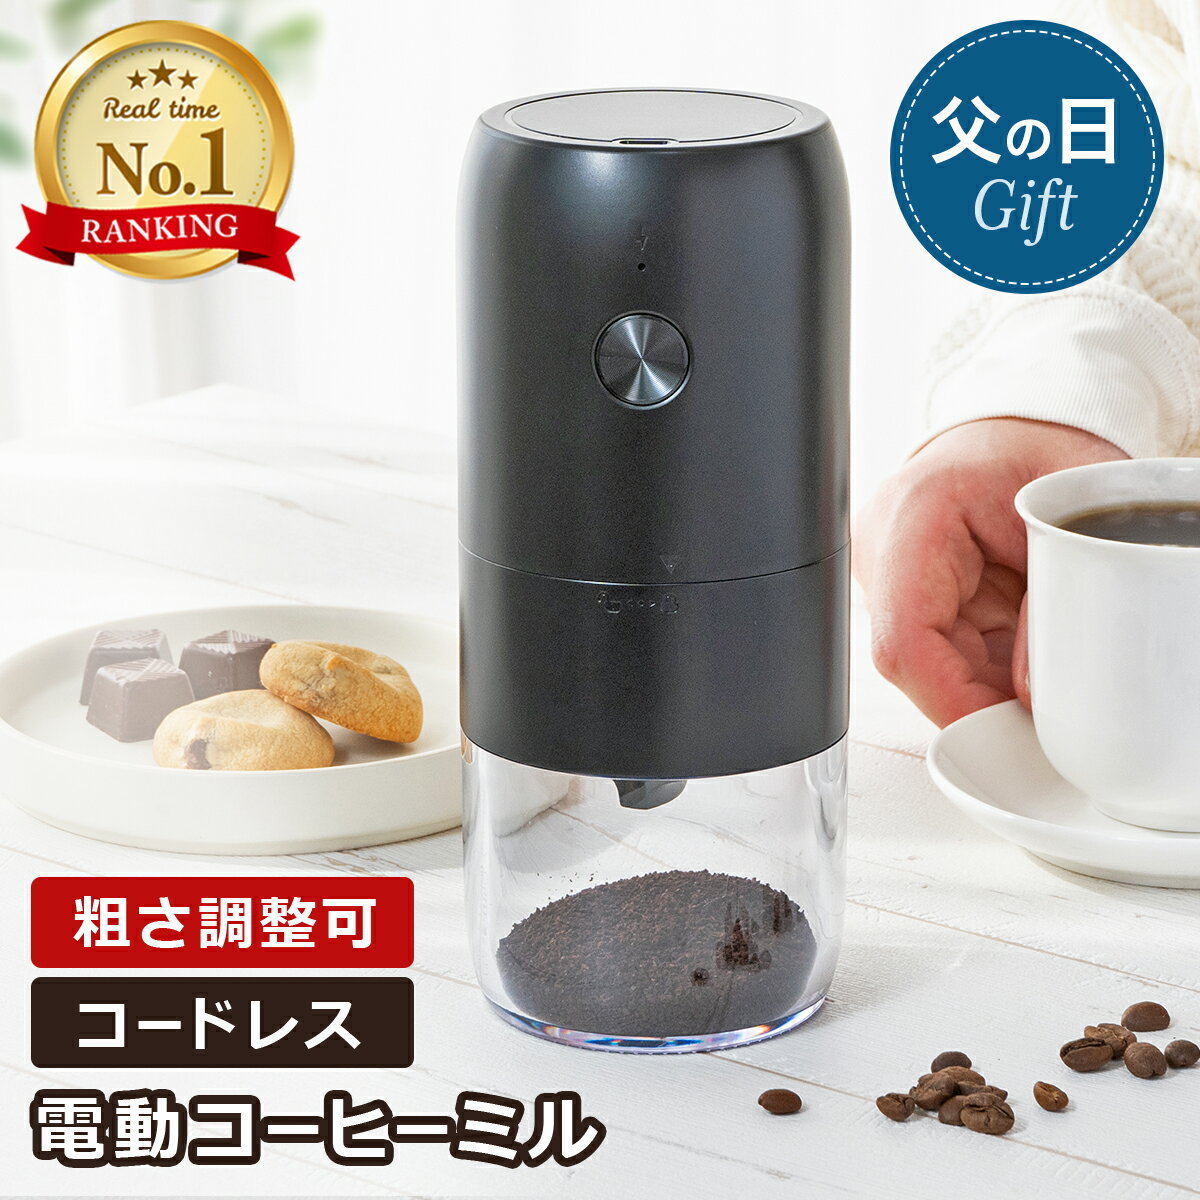 【600円OFFクーポン】コーヒーミル 電動 コーヒーグラインダー コードレス USB充電...